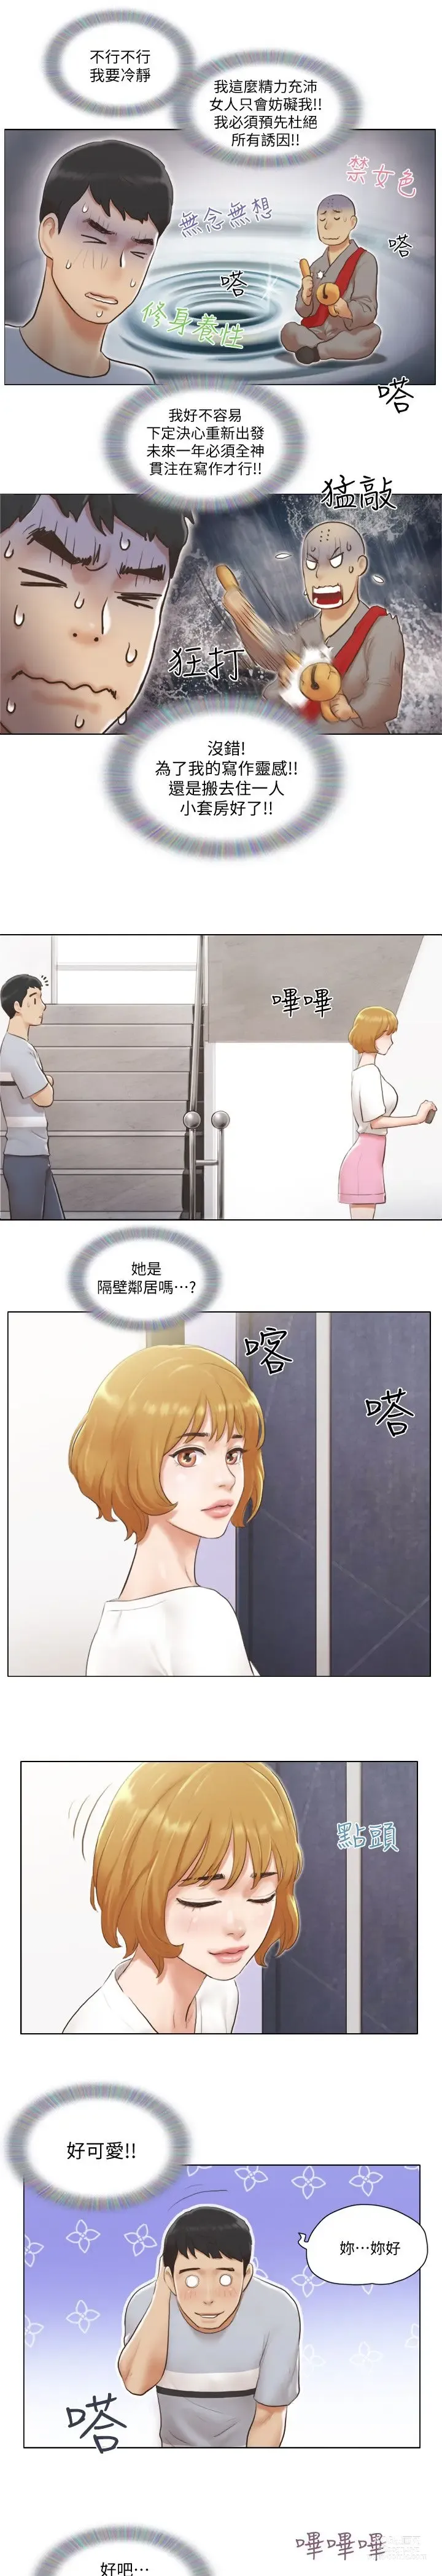 Page 23 of manga 單身女子公寓 1-41 END